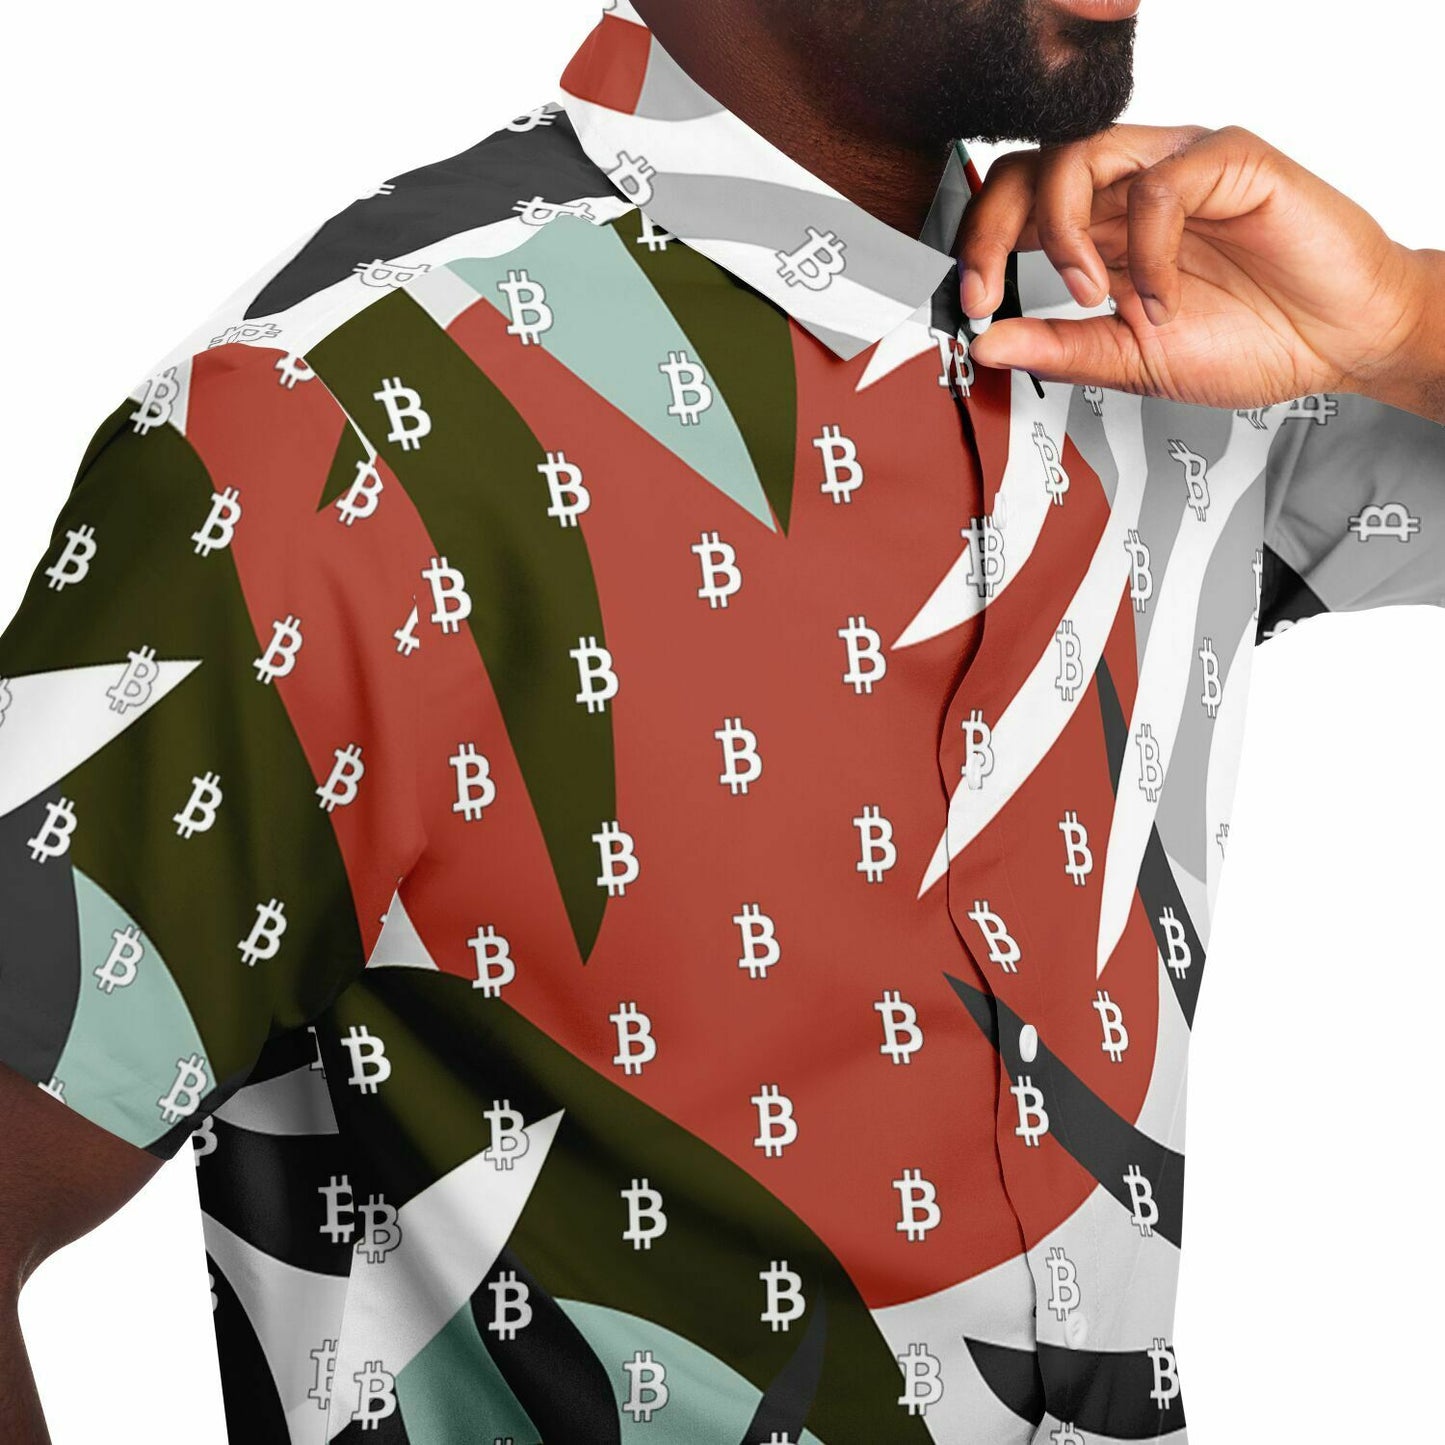 Bitcoin Foliage Shirt